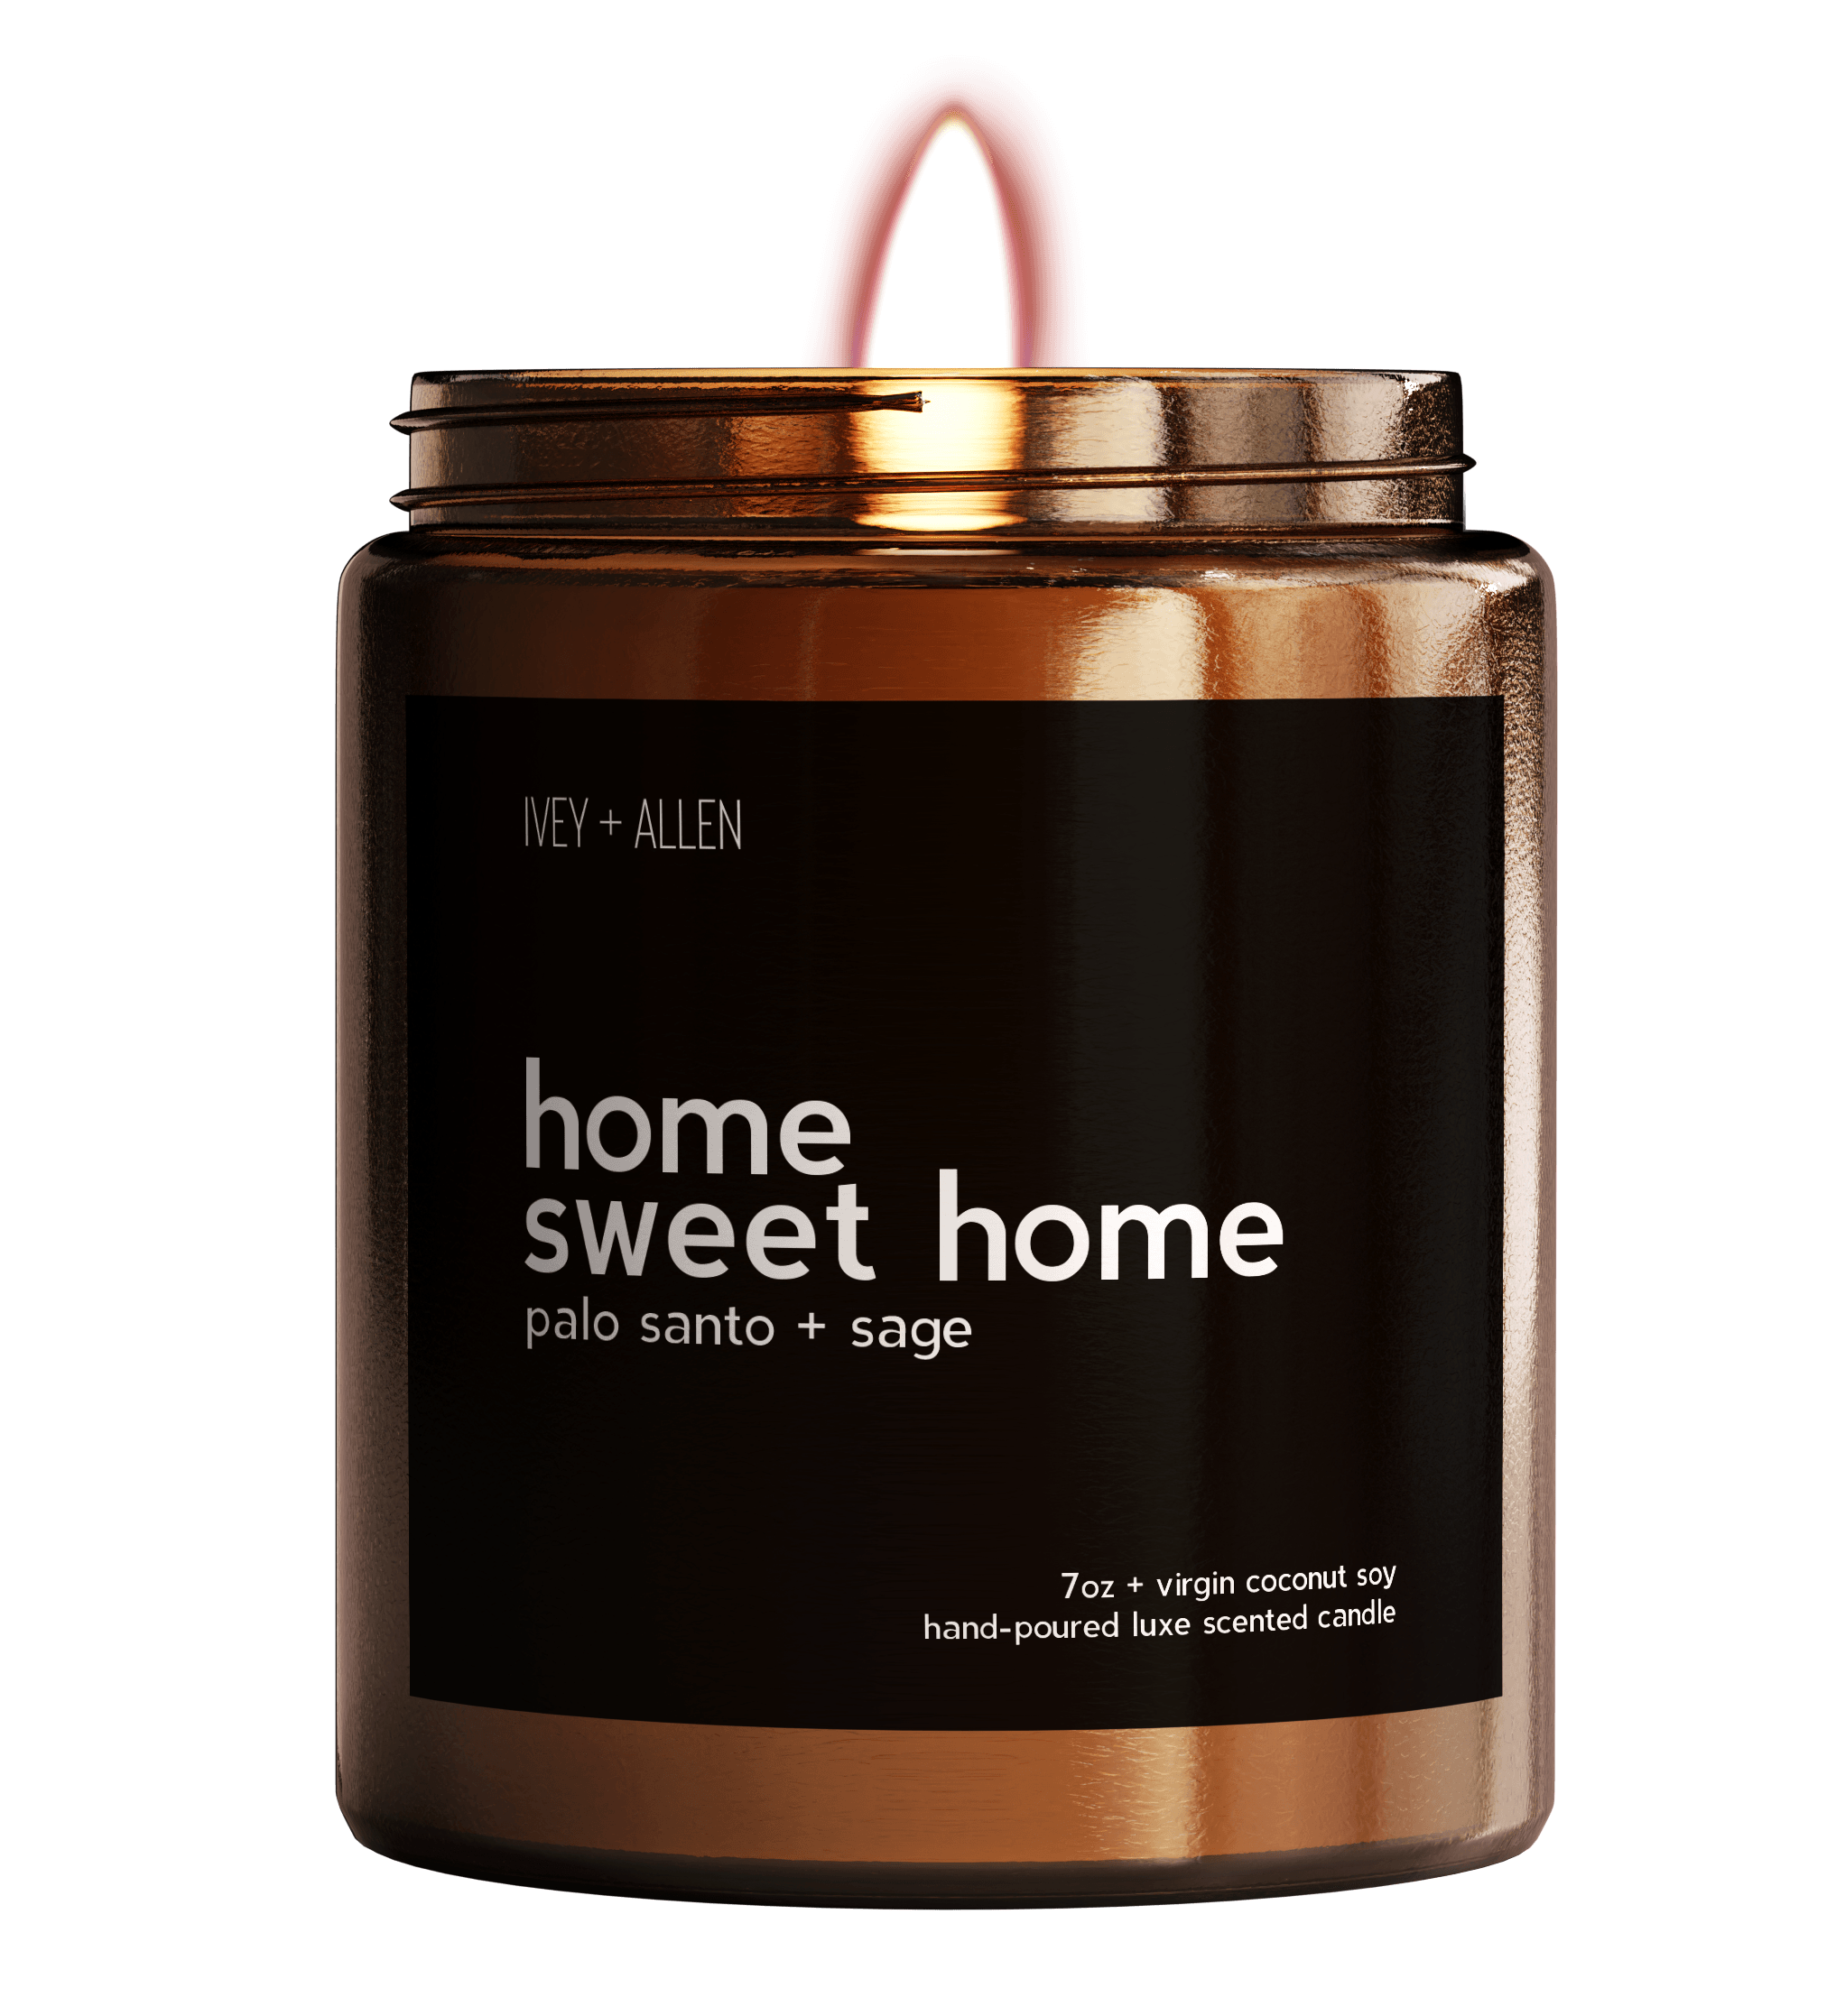 home sweet home - IVEY + ALLEN